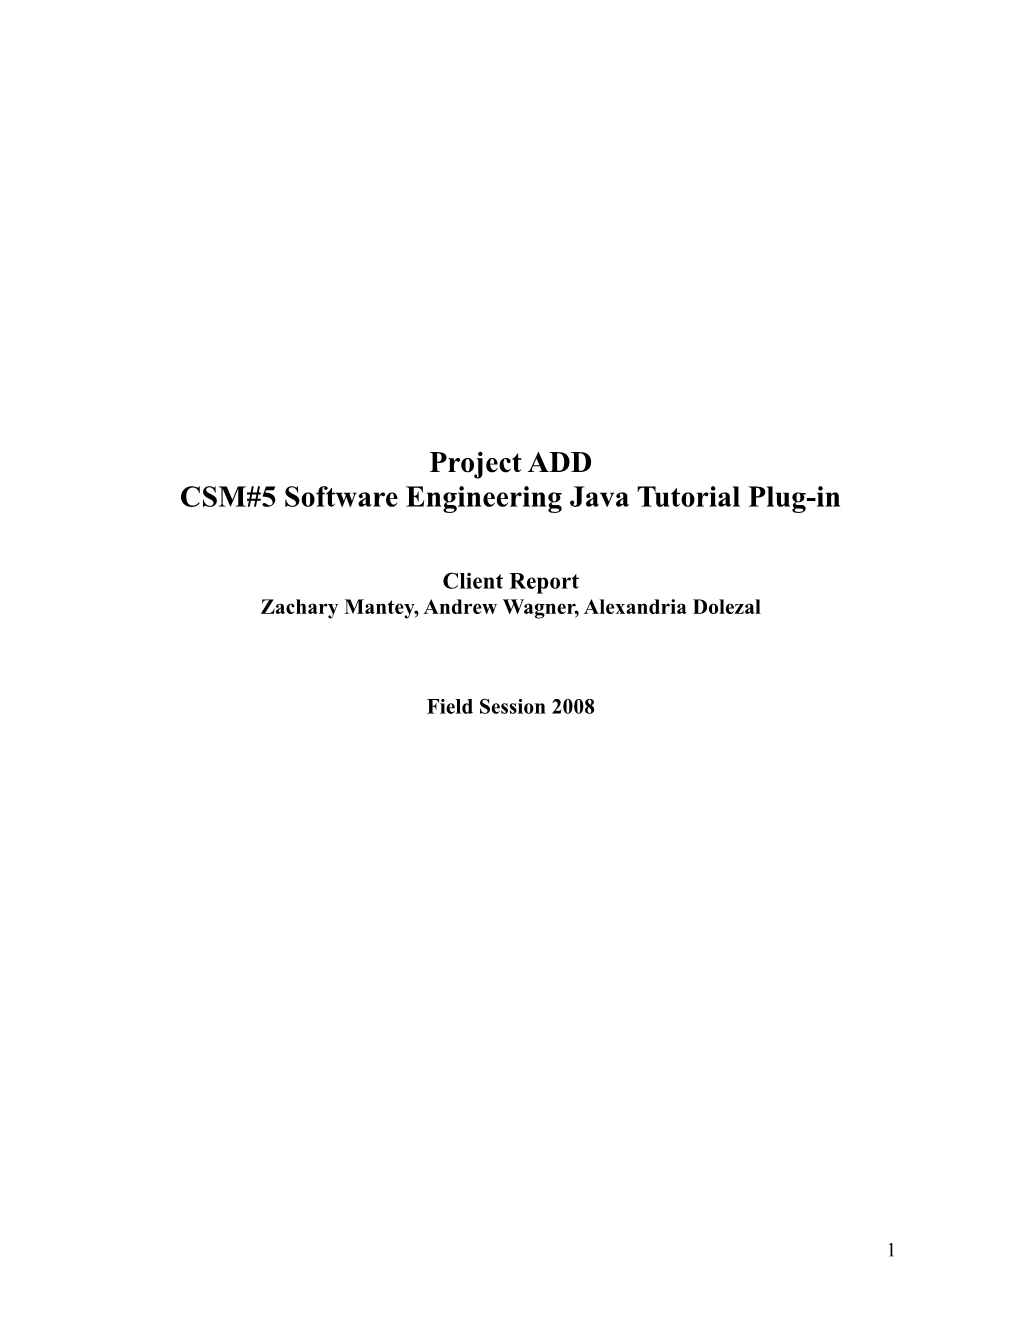 CSM#5 Software Engineering Java Tutorial Plug-In